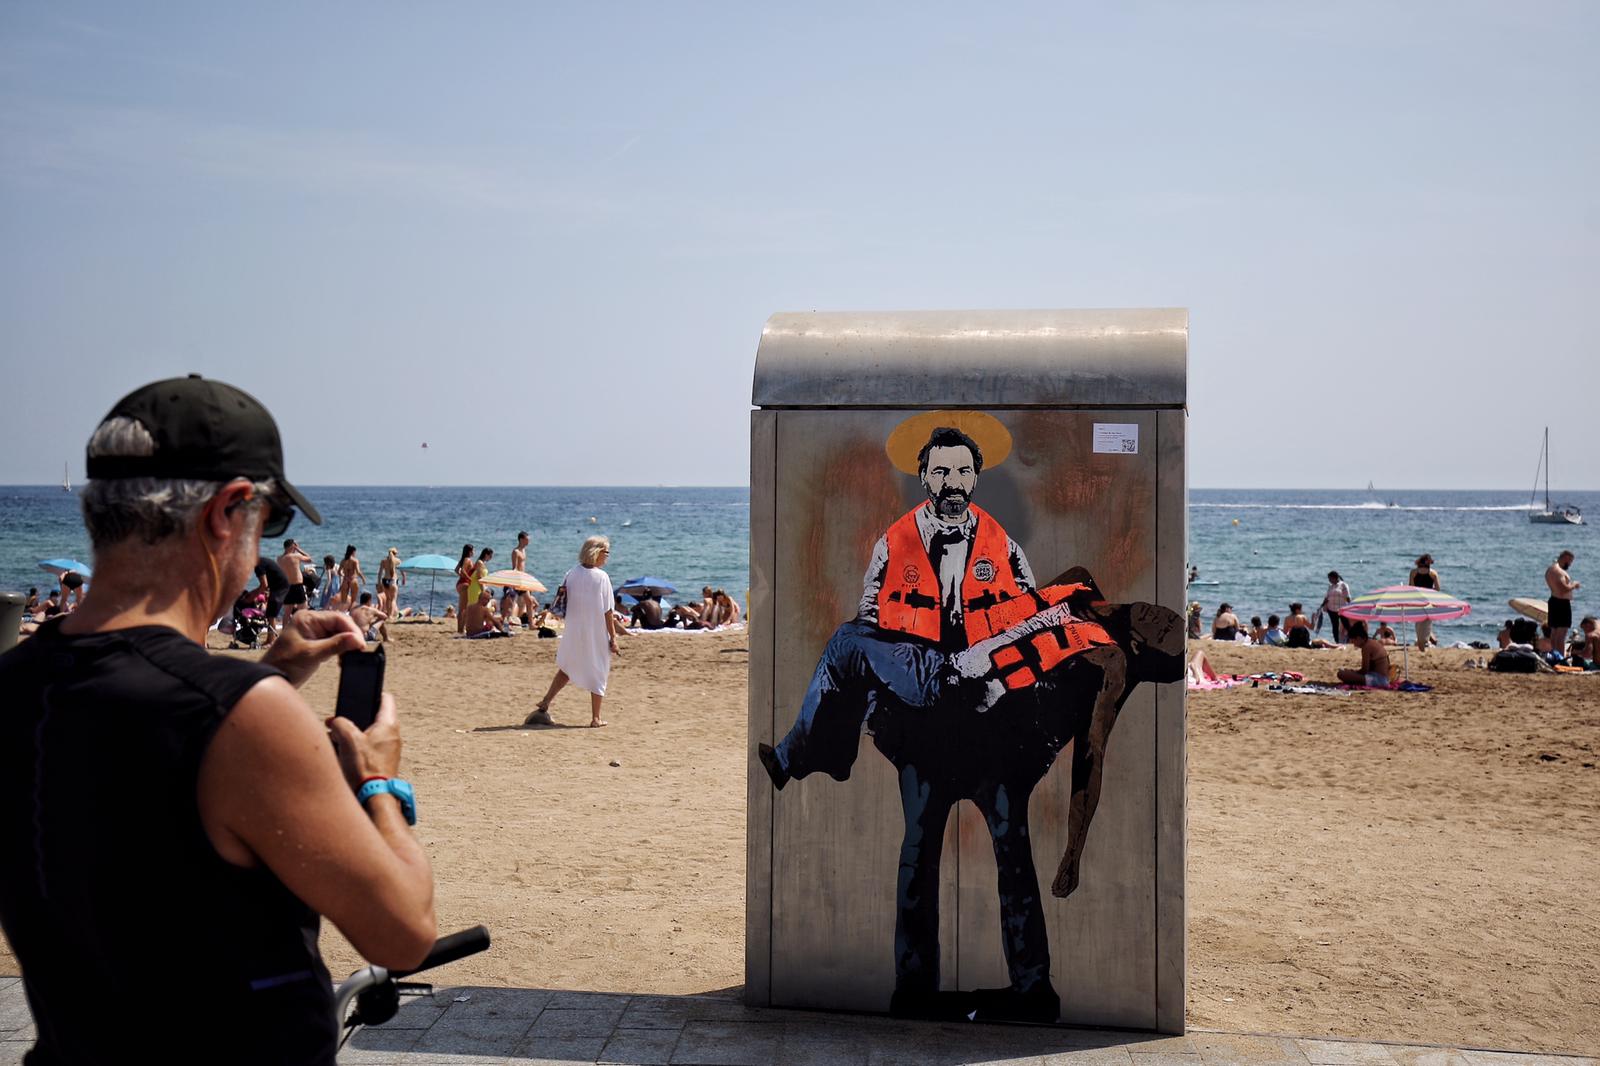 L'artista Tvboy "santifica" Òscar Camps amb un migrant als braços a la Barceloneta